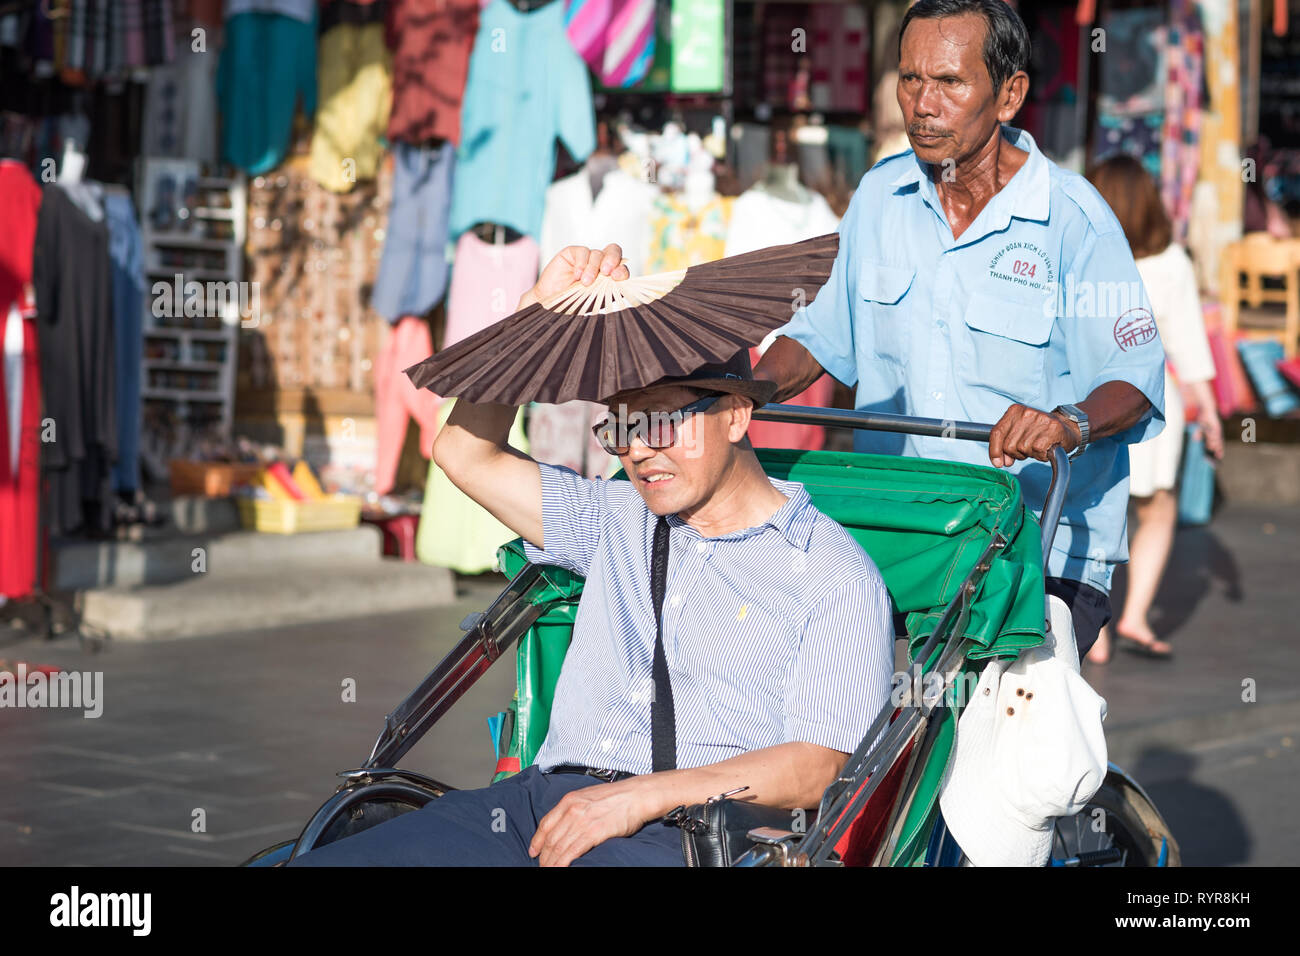 Hoi An, Vietnam - Octubre 23, 2018: un hombre asiático cubre su cara con un ventilador para intentar defender sus ojos contra el brillo intenso del sol en un camarote del rickshaw. Foto de stock